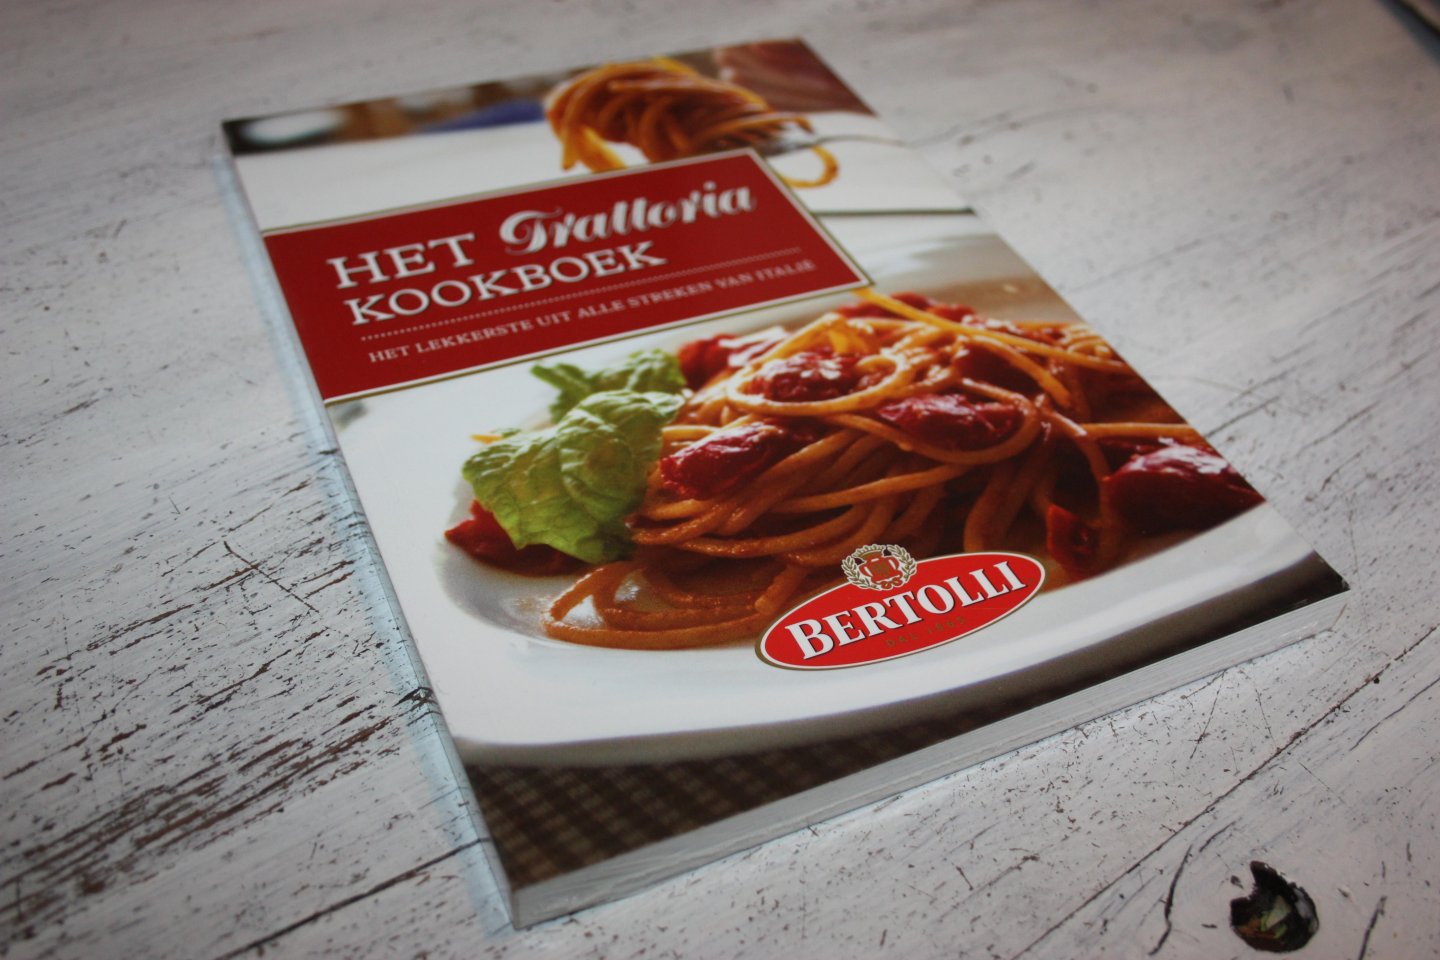 Somberg, Paul - Het Trattoria kookboek, het lekkerste uit alle streken van Italie.